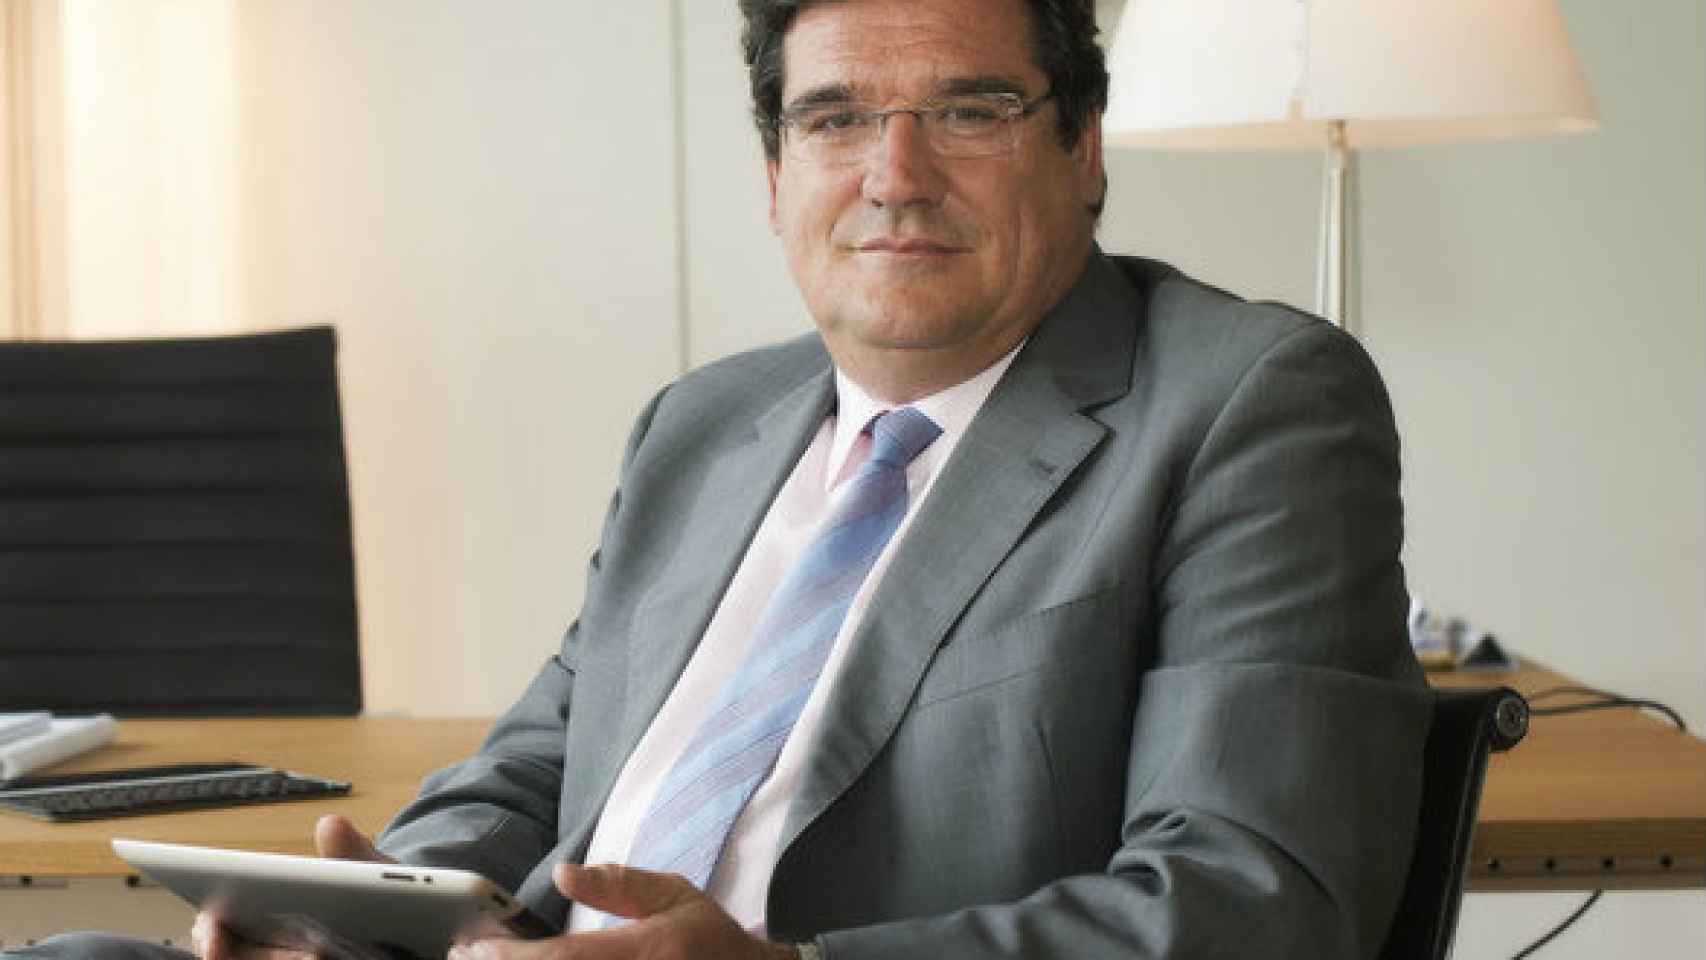 José Luis Escrivá, presidente de la Airef.